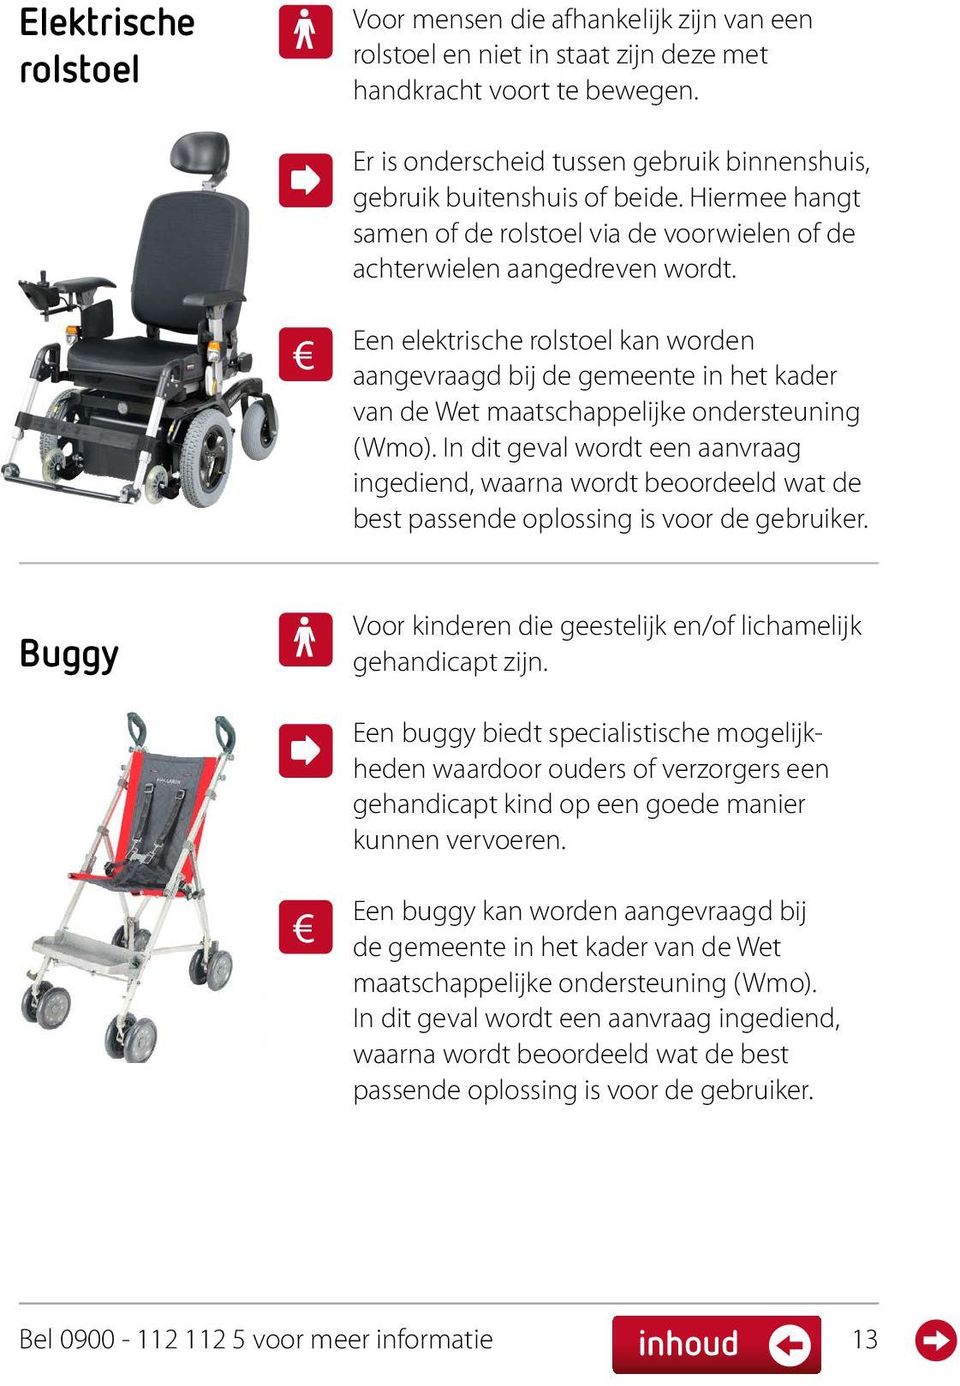 Een elektrische rolstoel kan worden aangevraagd bij de gemeente in het kader van de Wet maatschappelijke ondersteuning (Wmo).